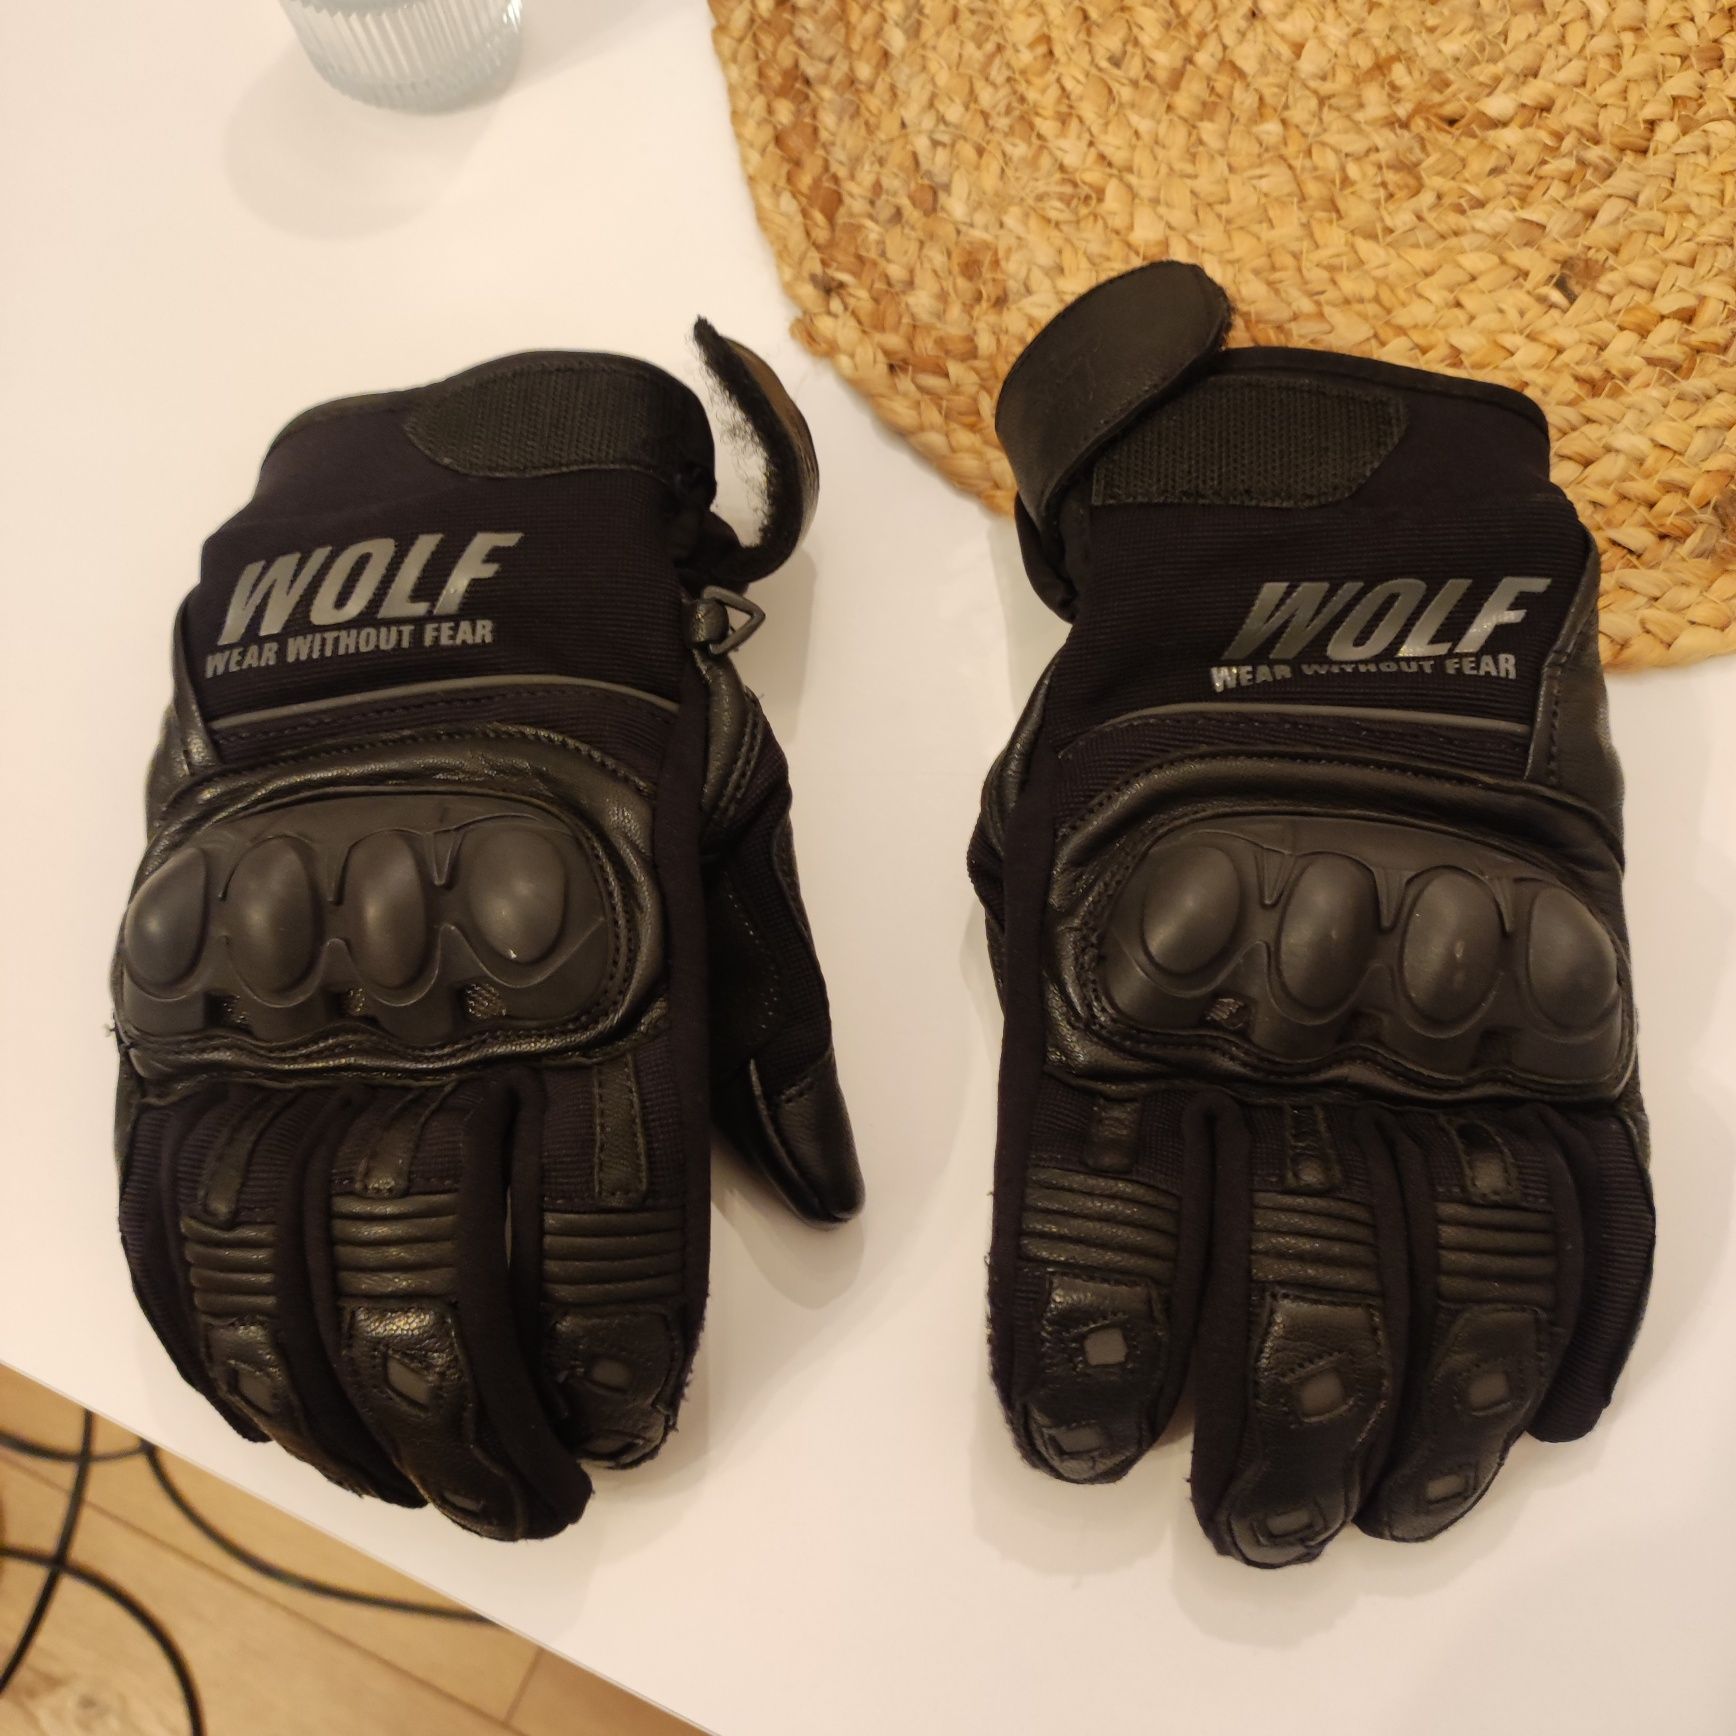 Rękawiczki Wolf rozmiar M